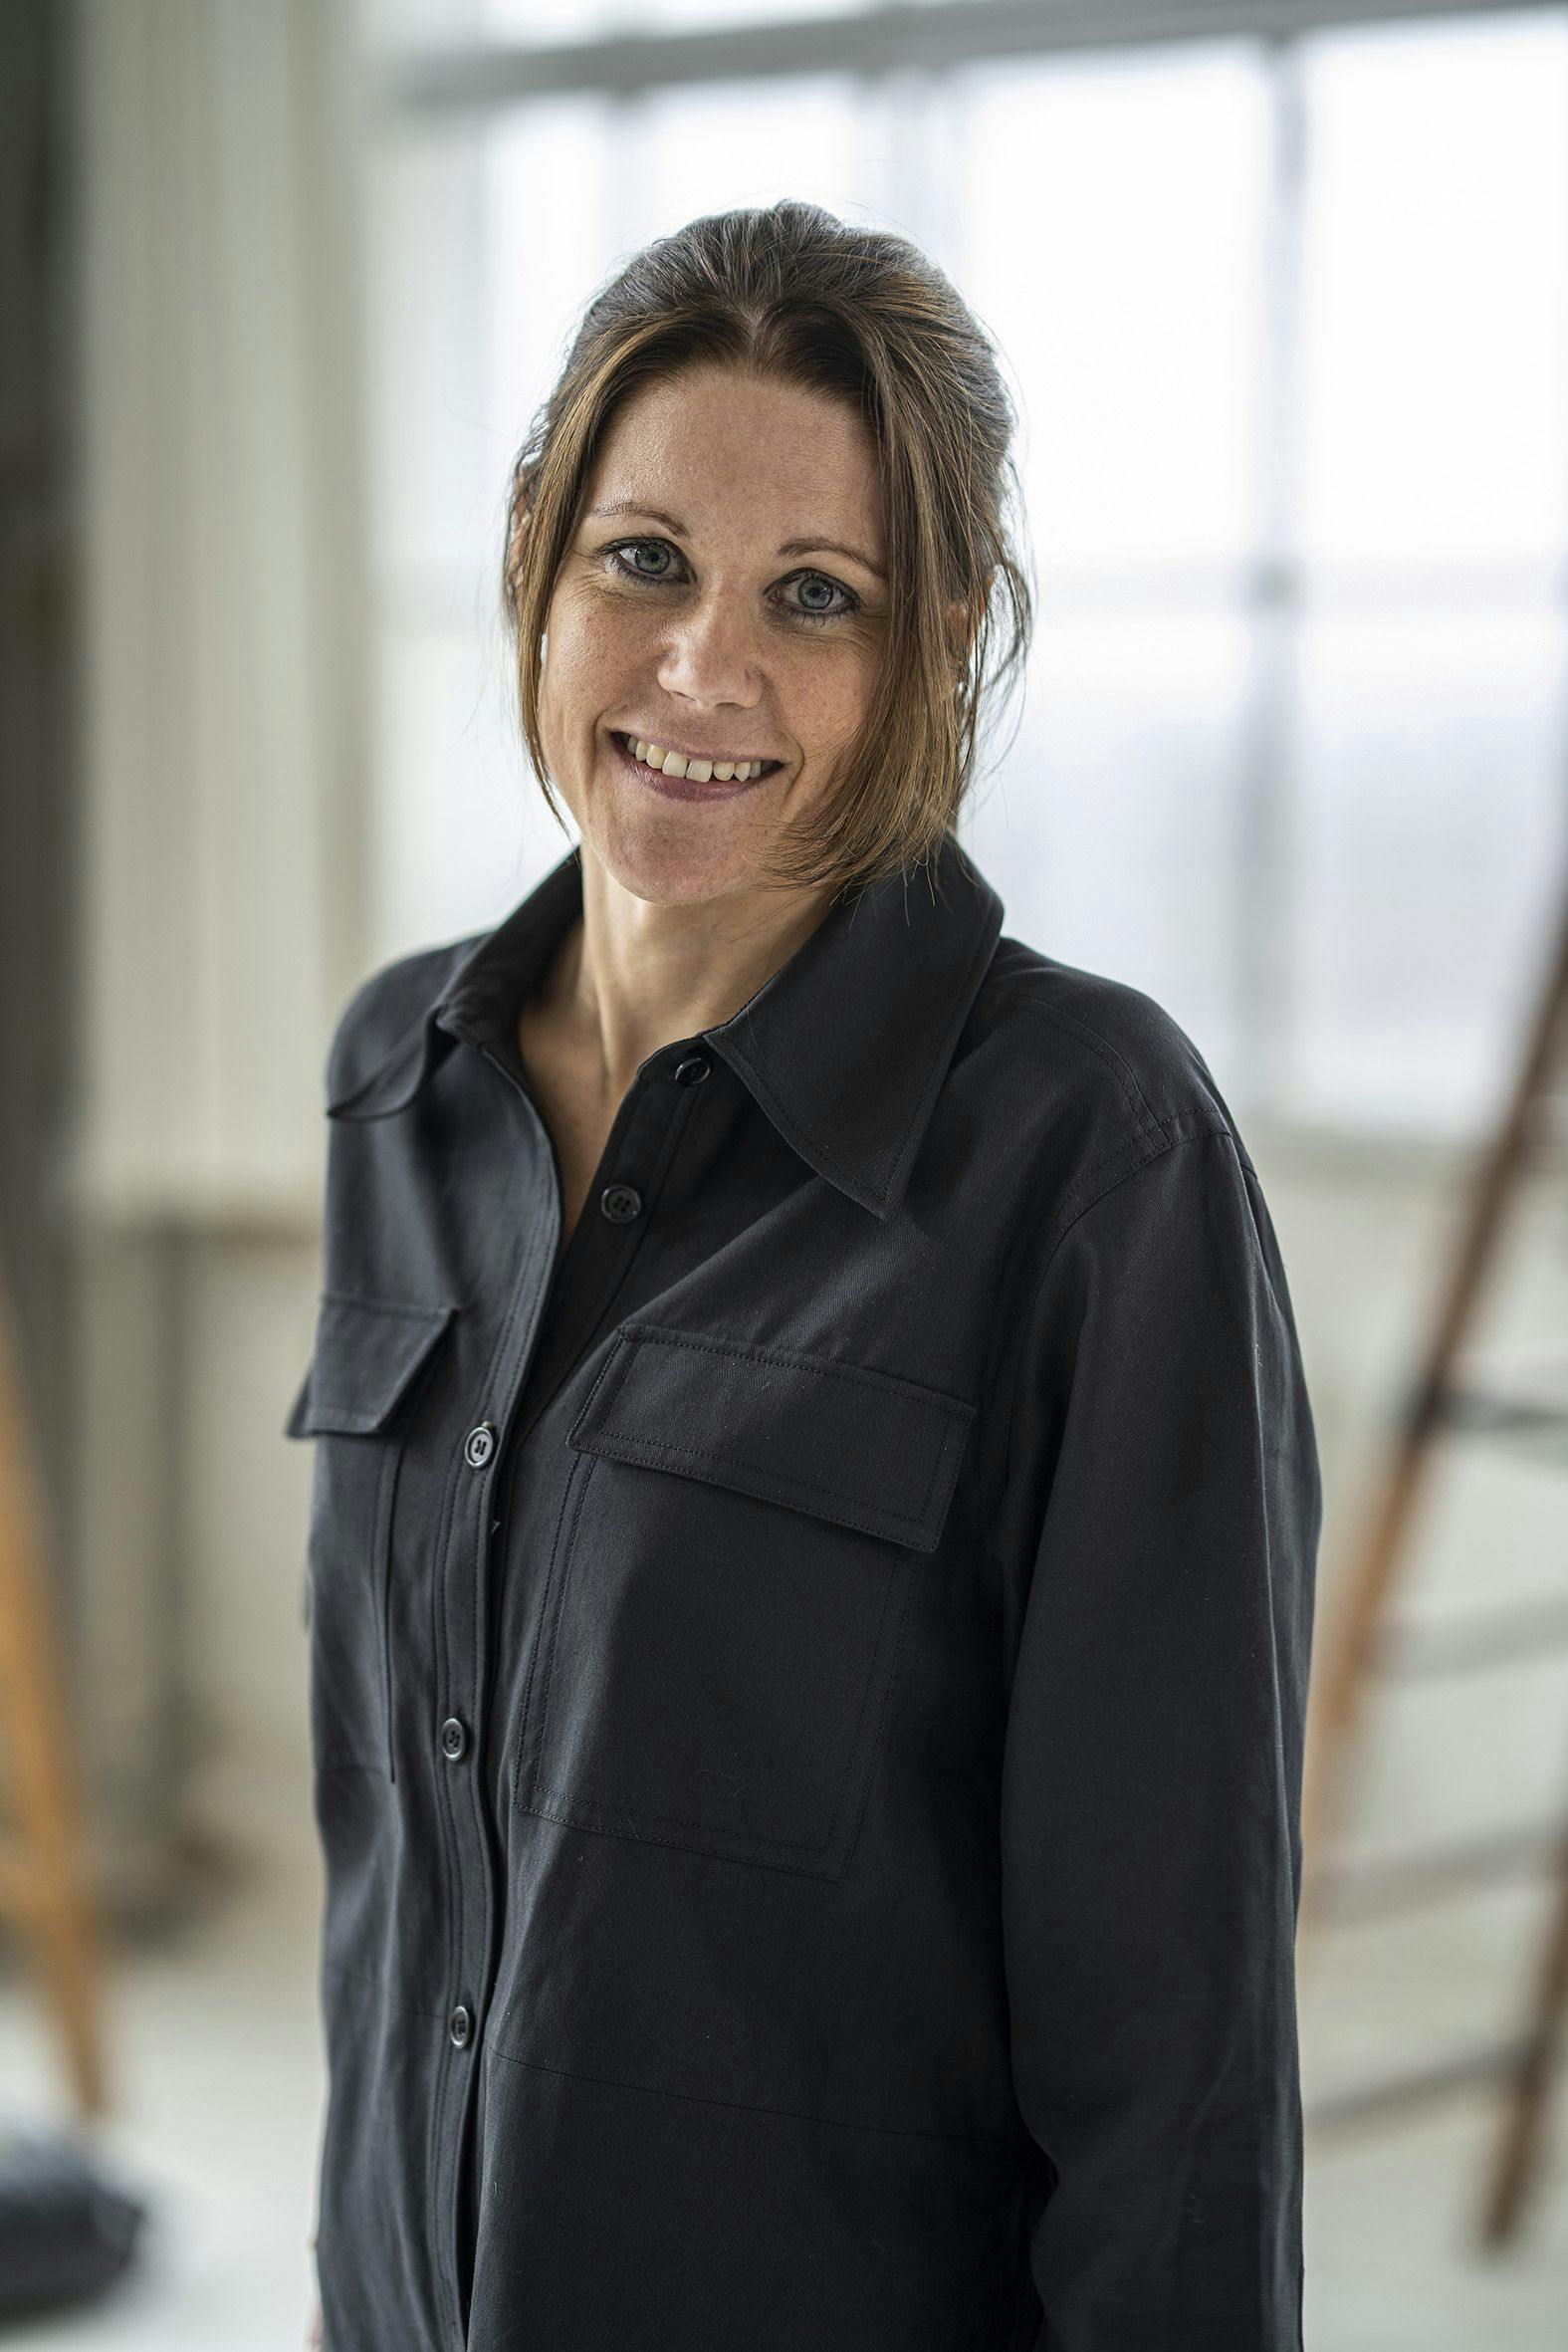 Anne Boysen vandt 2. sæson af "Danmarks næste klassiker"
